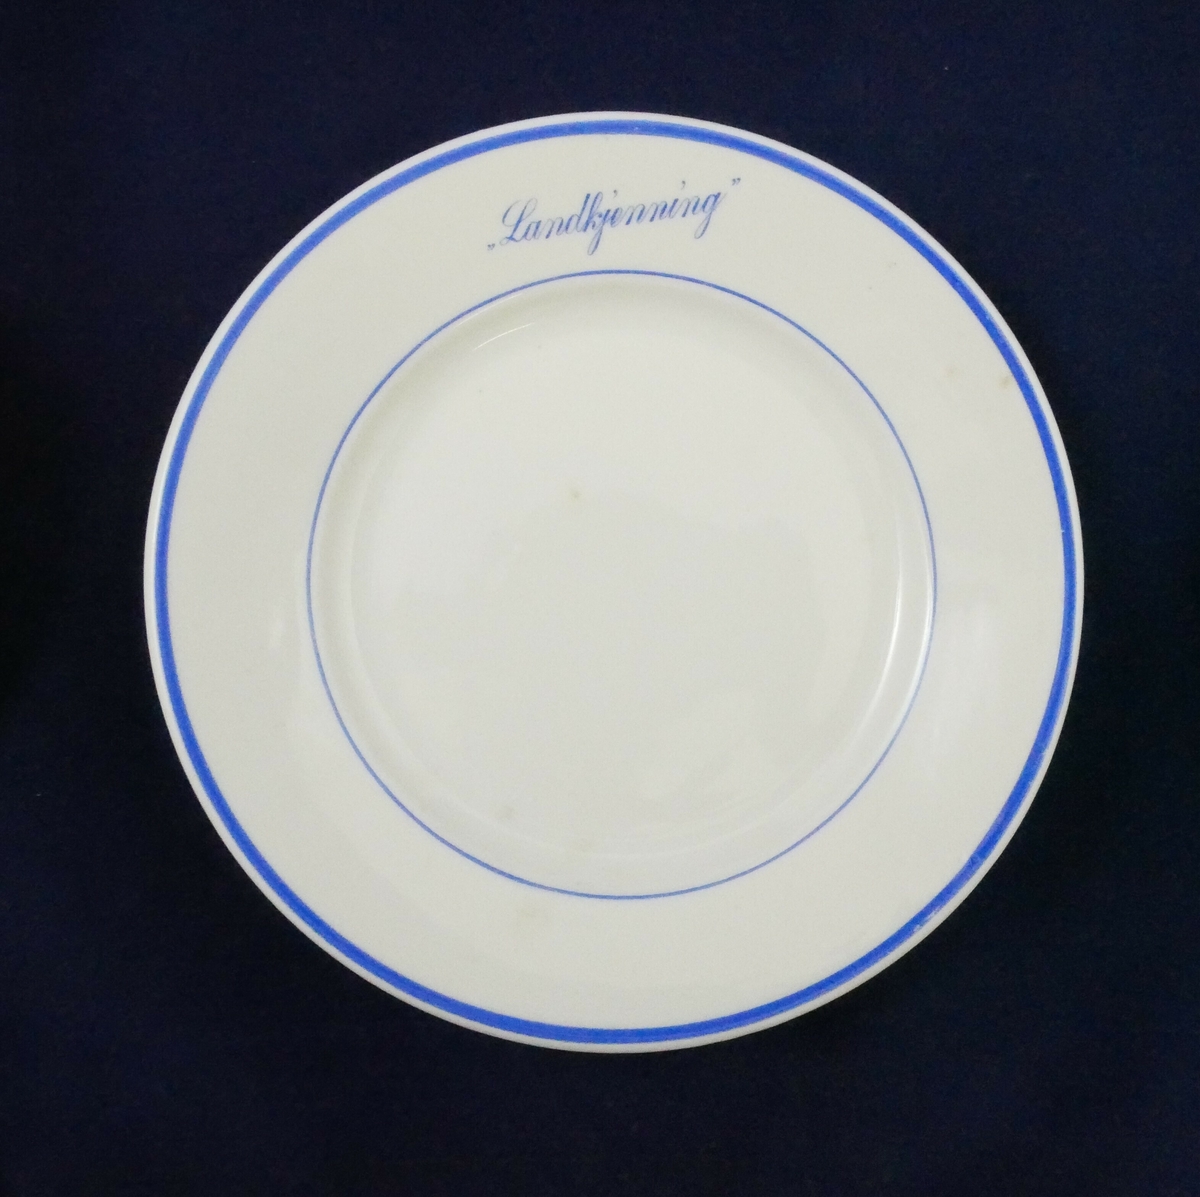 Servise i hvitt porselen med blått dekor. Servise består av ti deler med tre tallerkener, tre asjetter og fire kopper

